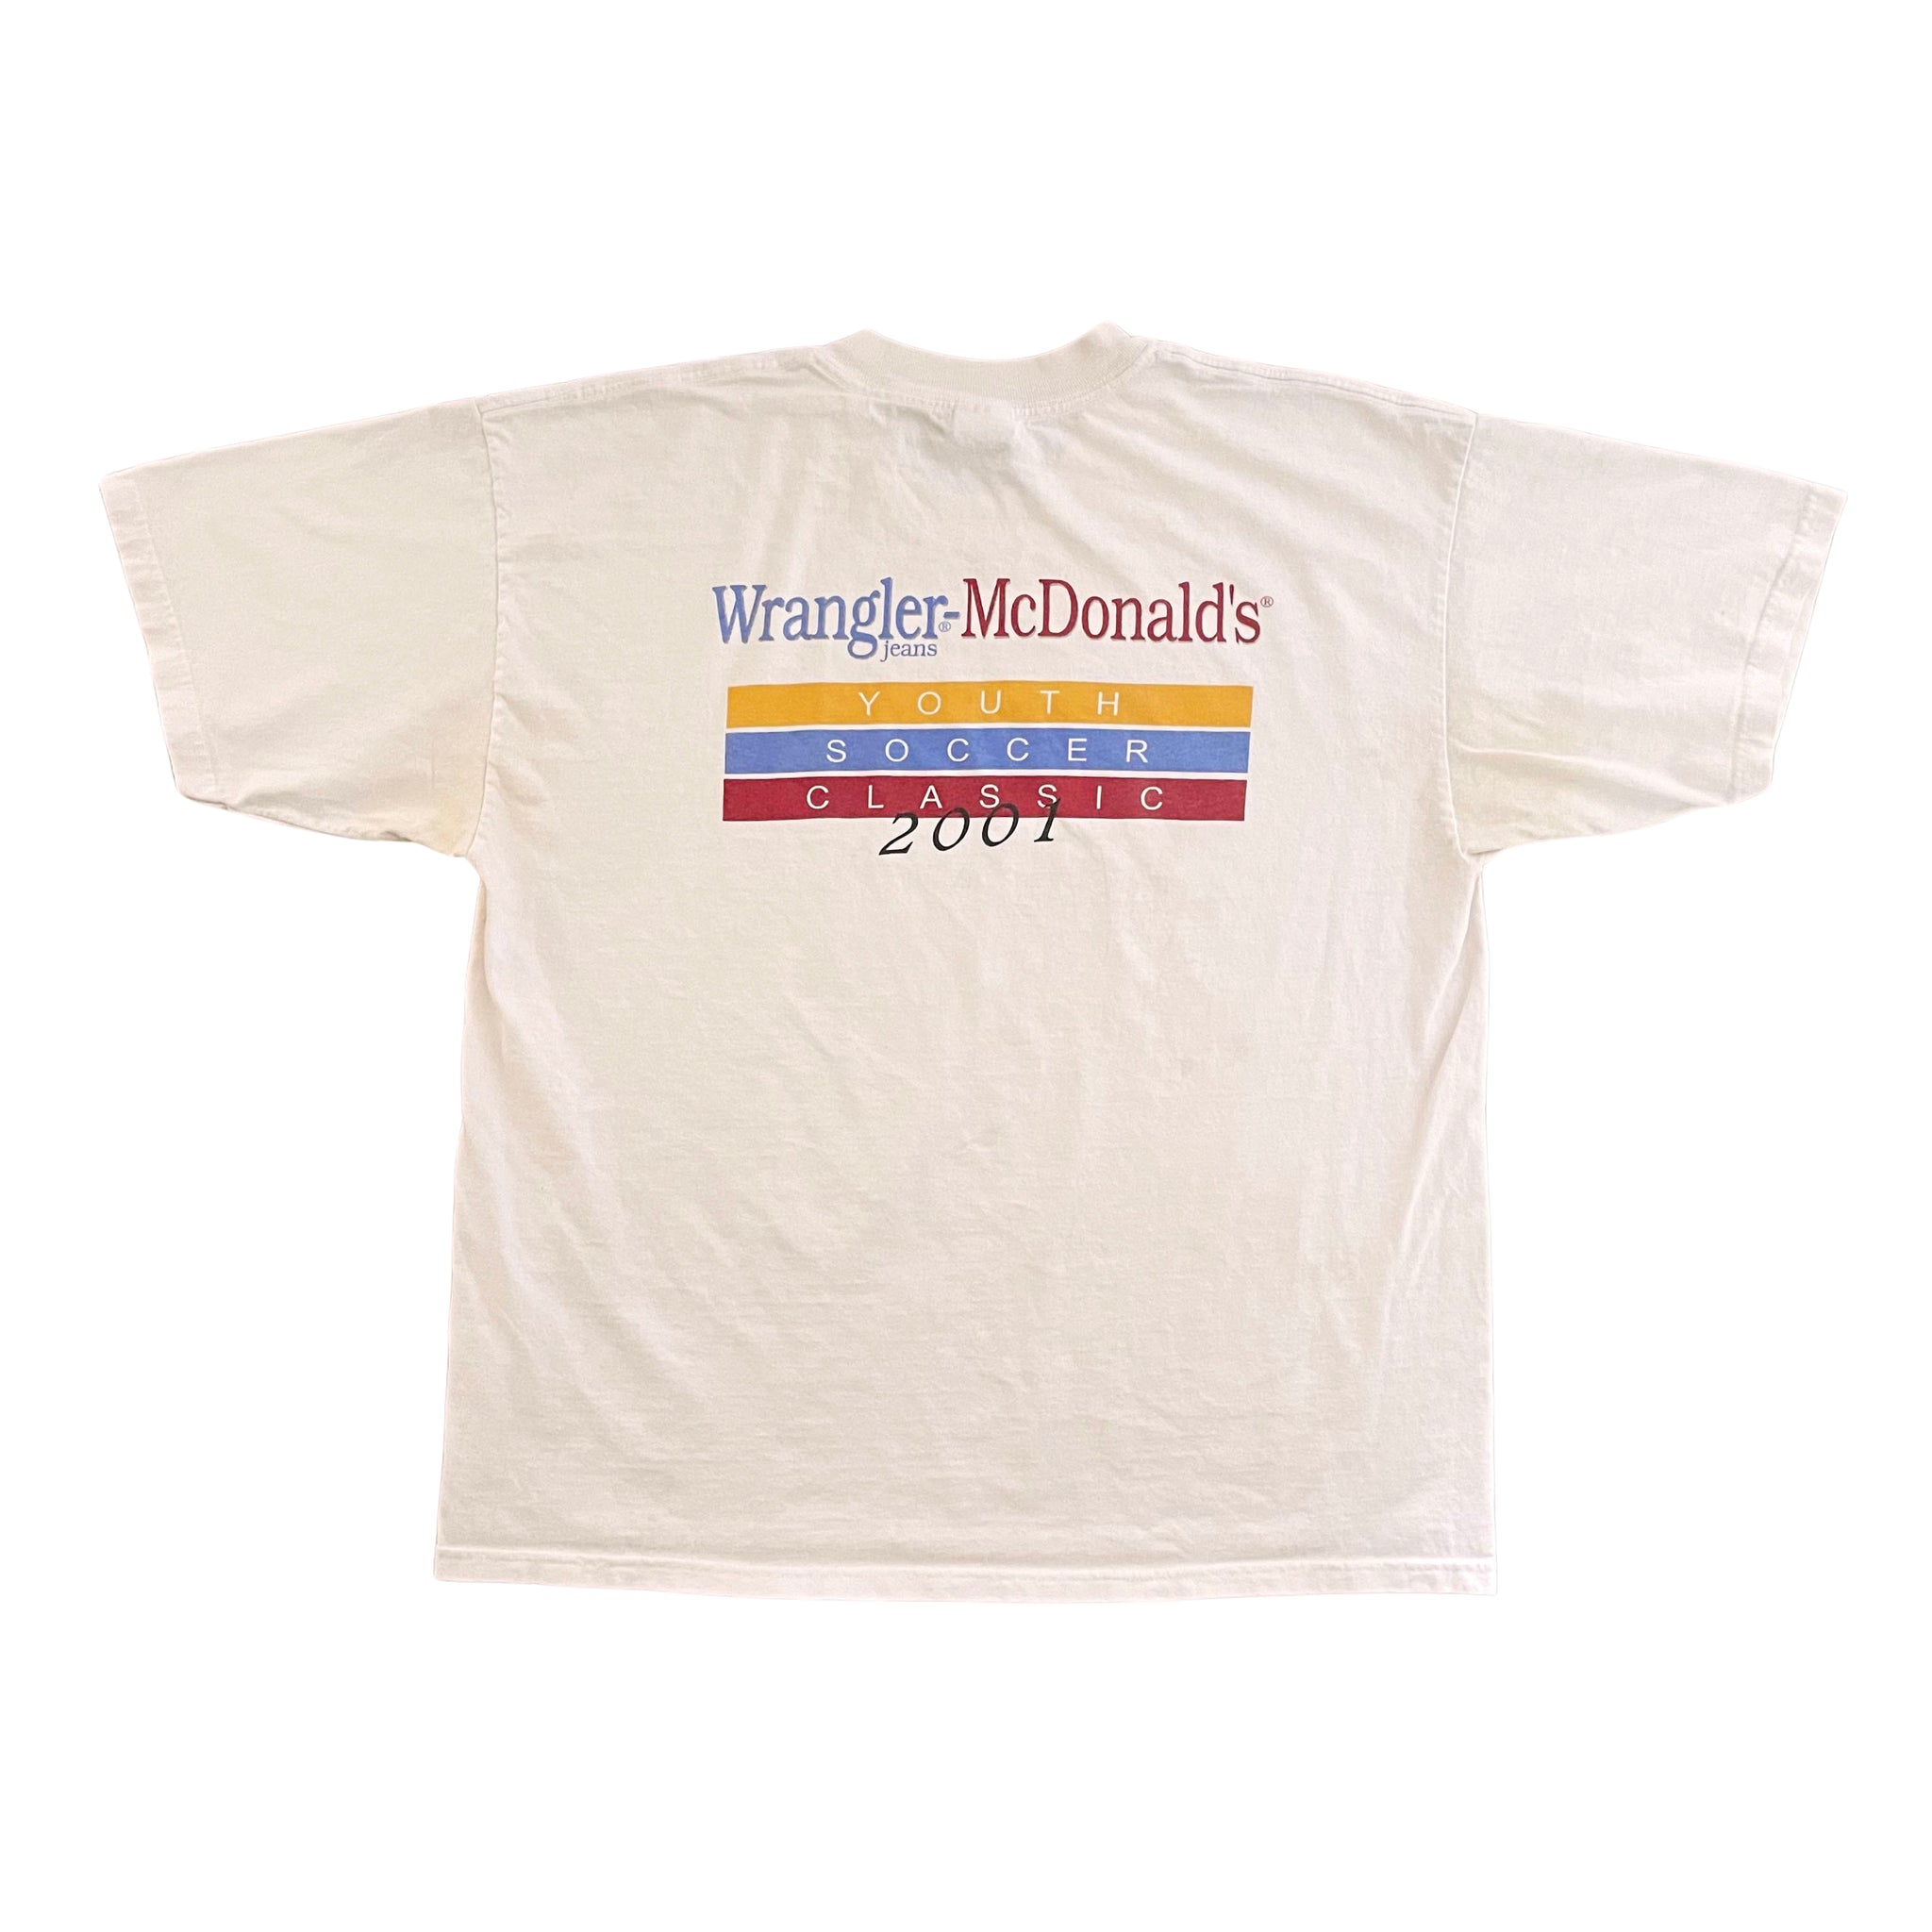 Wrangler-McDonald's Tourney T-Shirt - XL